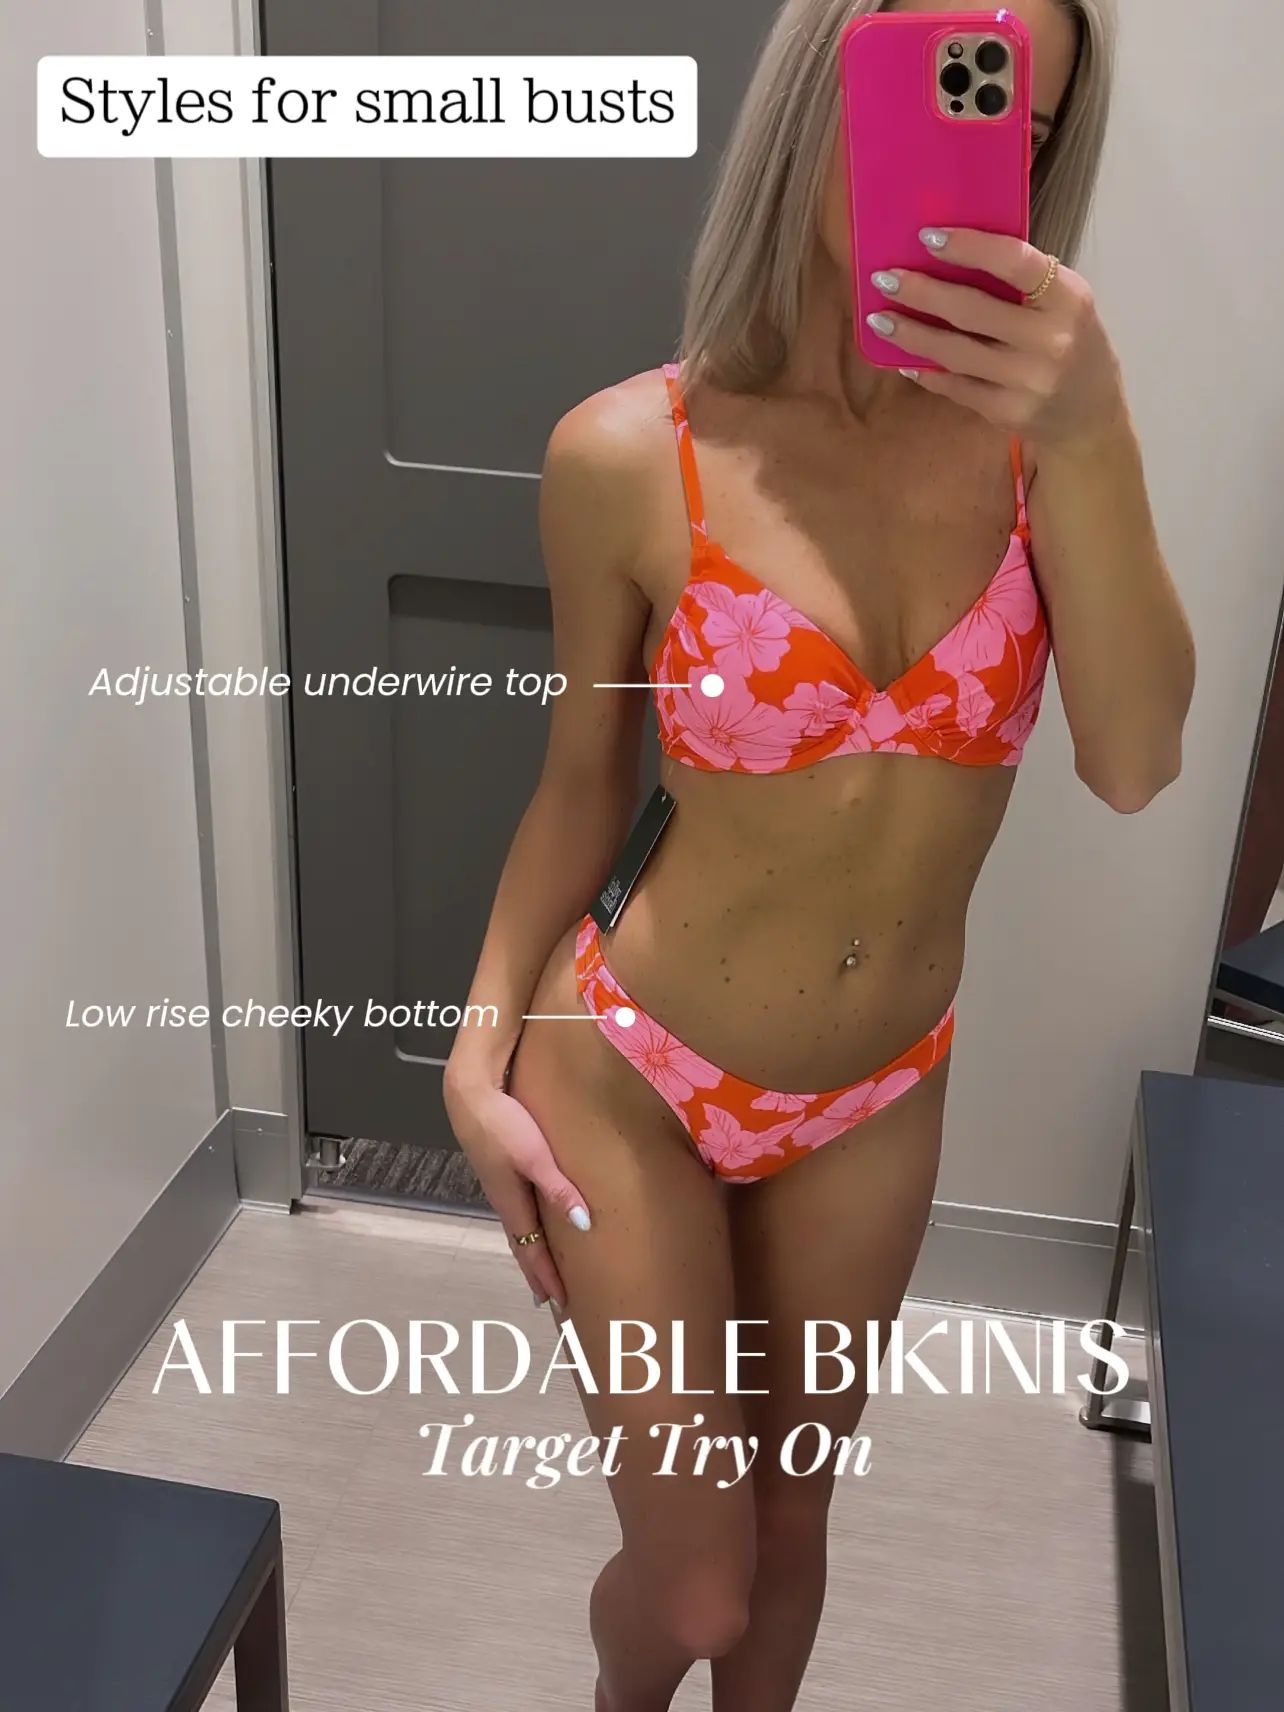 Women's Cut Out Bralette Bikini Top - Wild Fable™ Coral Orange XS